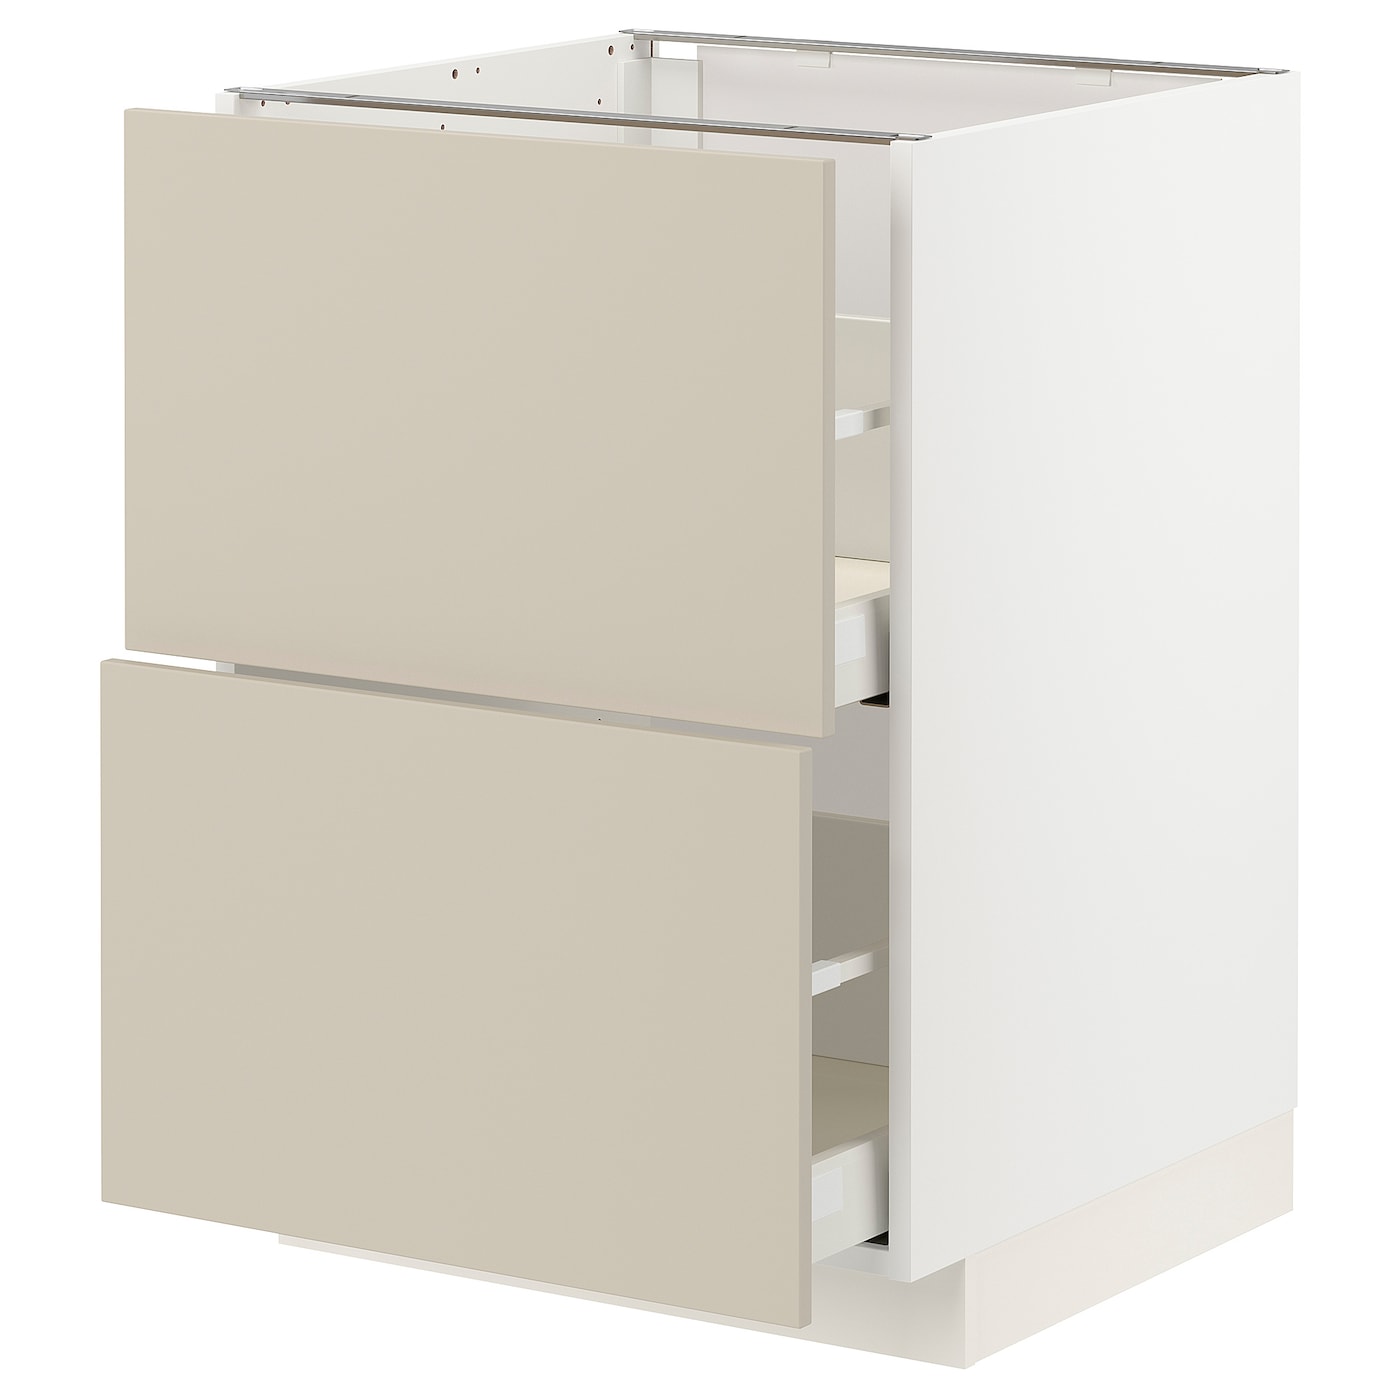 Напольный шкаф  - IKEA METOD MAXIMERA, 88x61,6x60см, белый/бежевый, МЕТОД МАКСИМЕРА ИКЕА